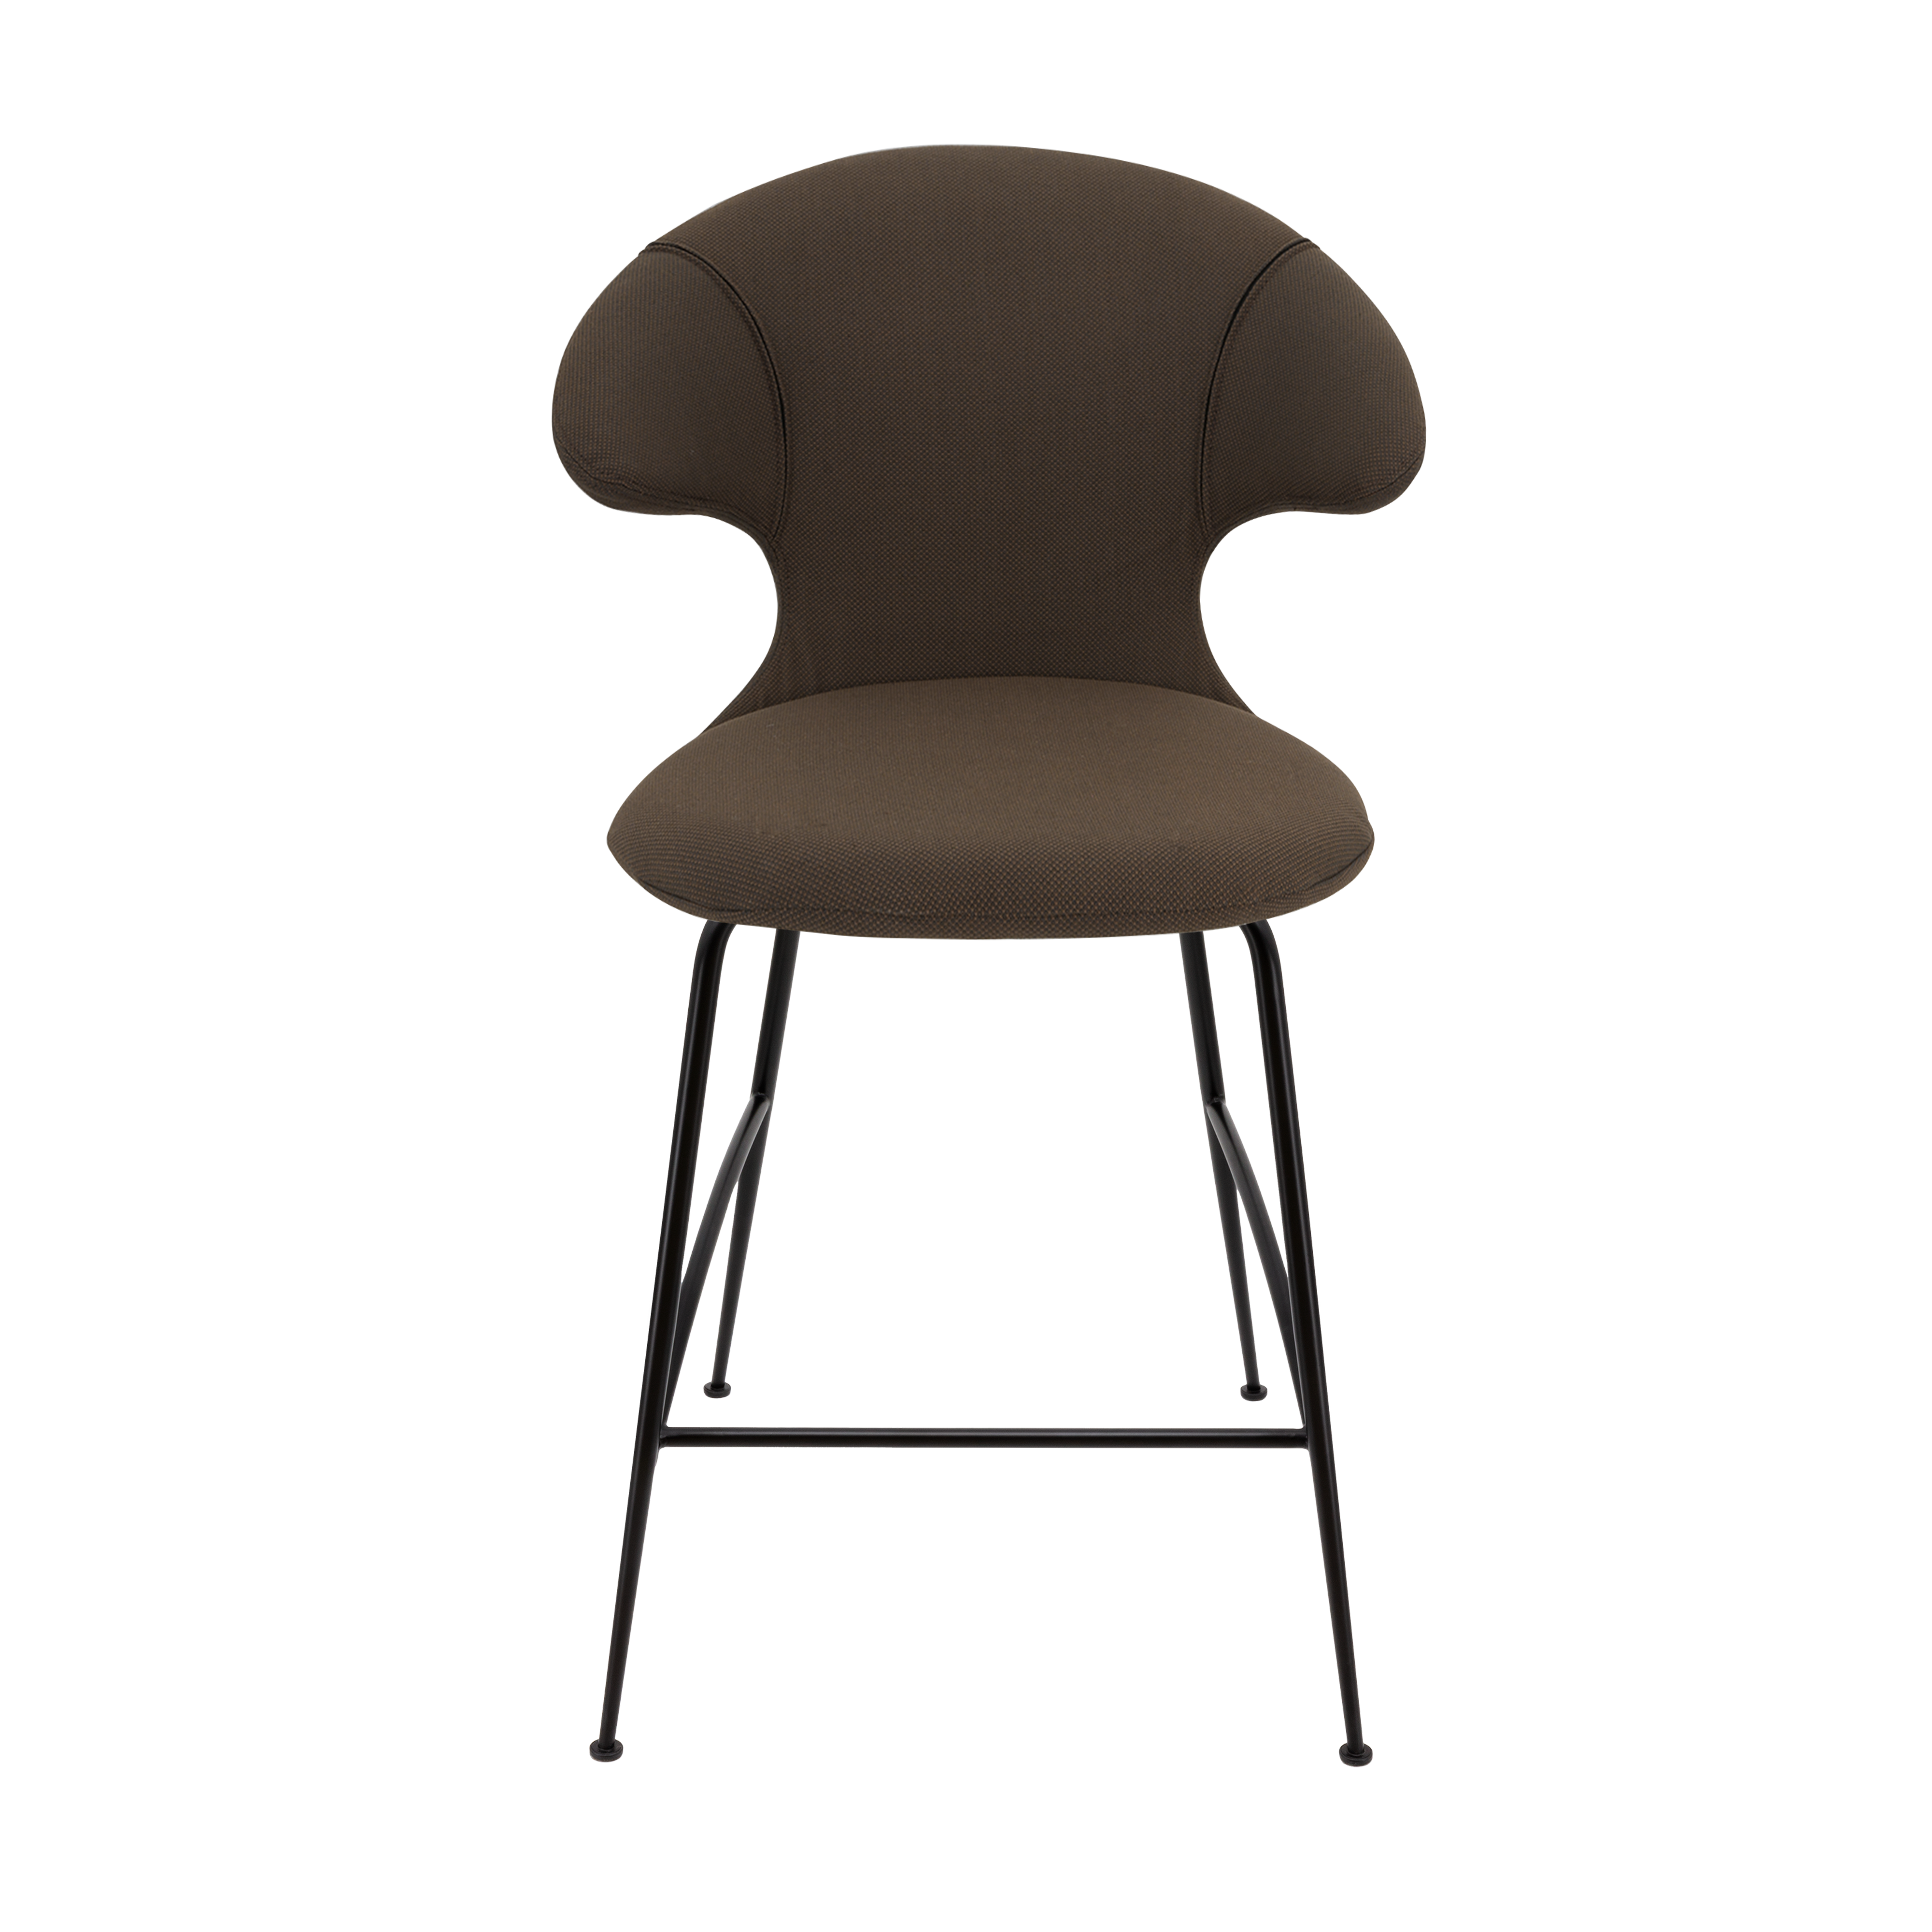 Time Flies Counter Stuhl in Mocca präsentiert im Onlineshop von KAQTU Design AG. Barstuhl mit Armlehne ist von Umage